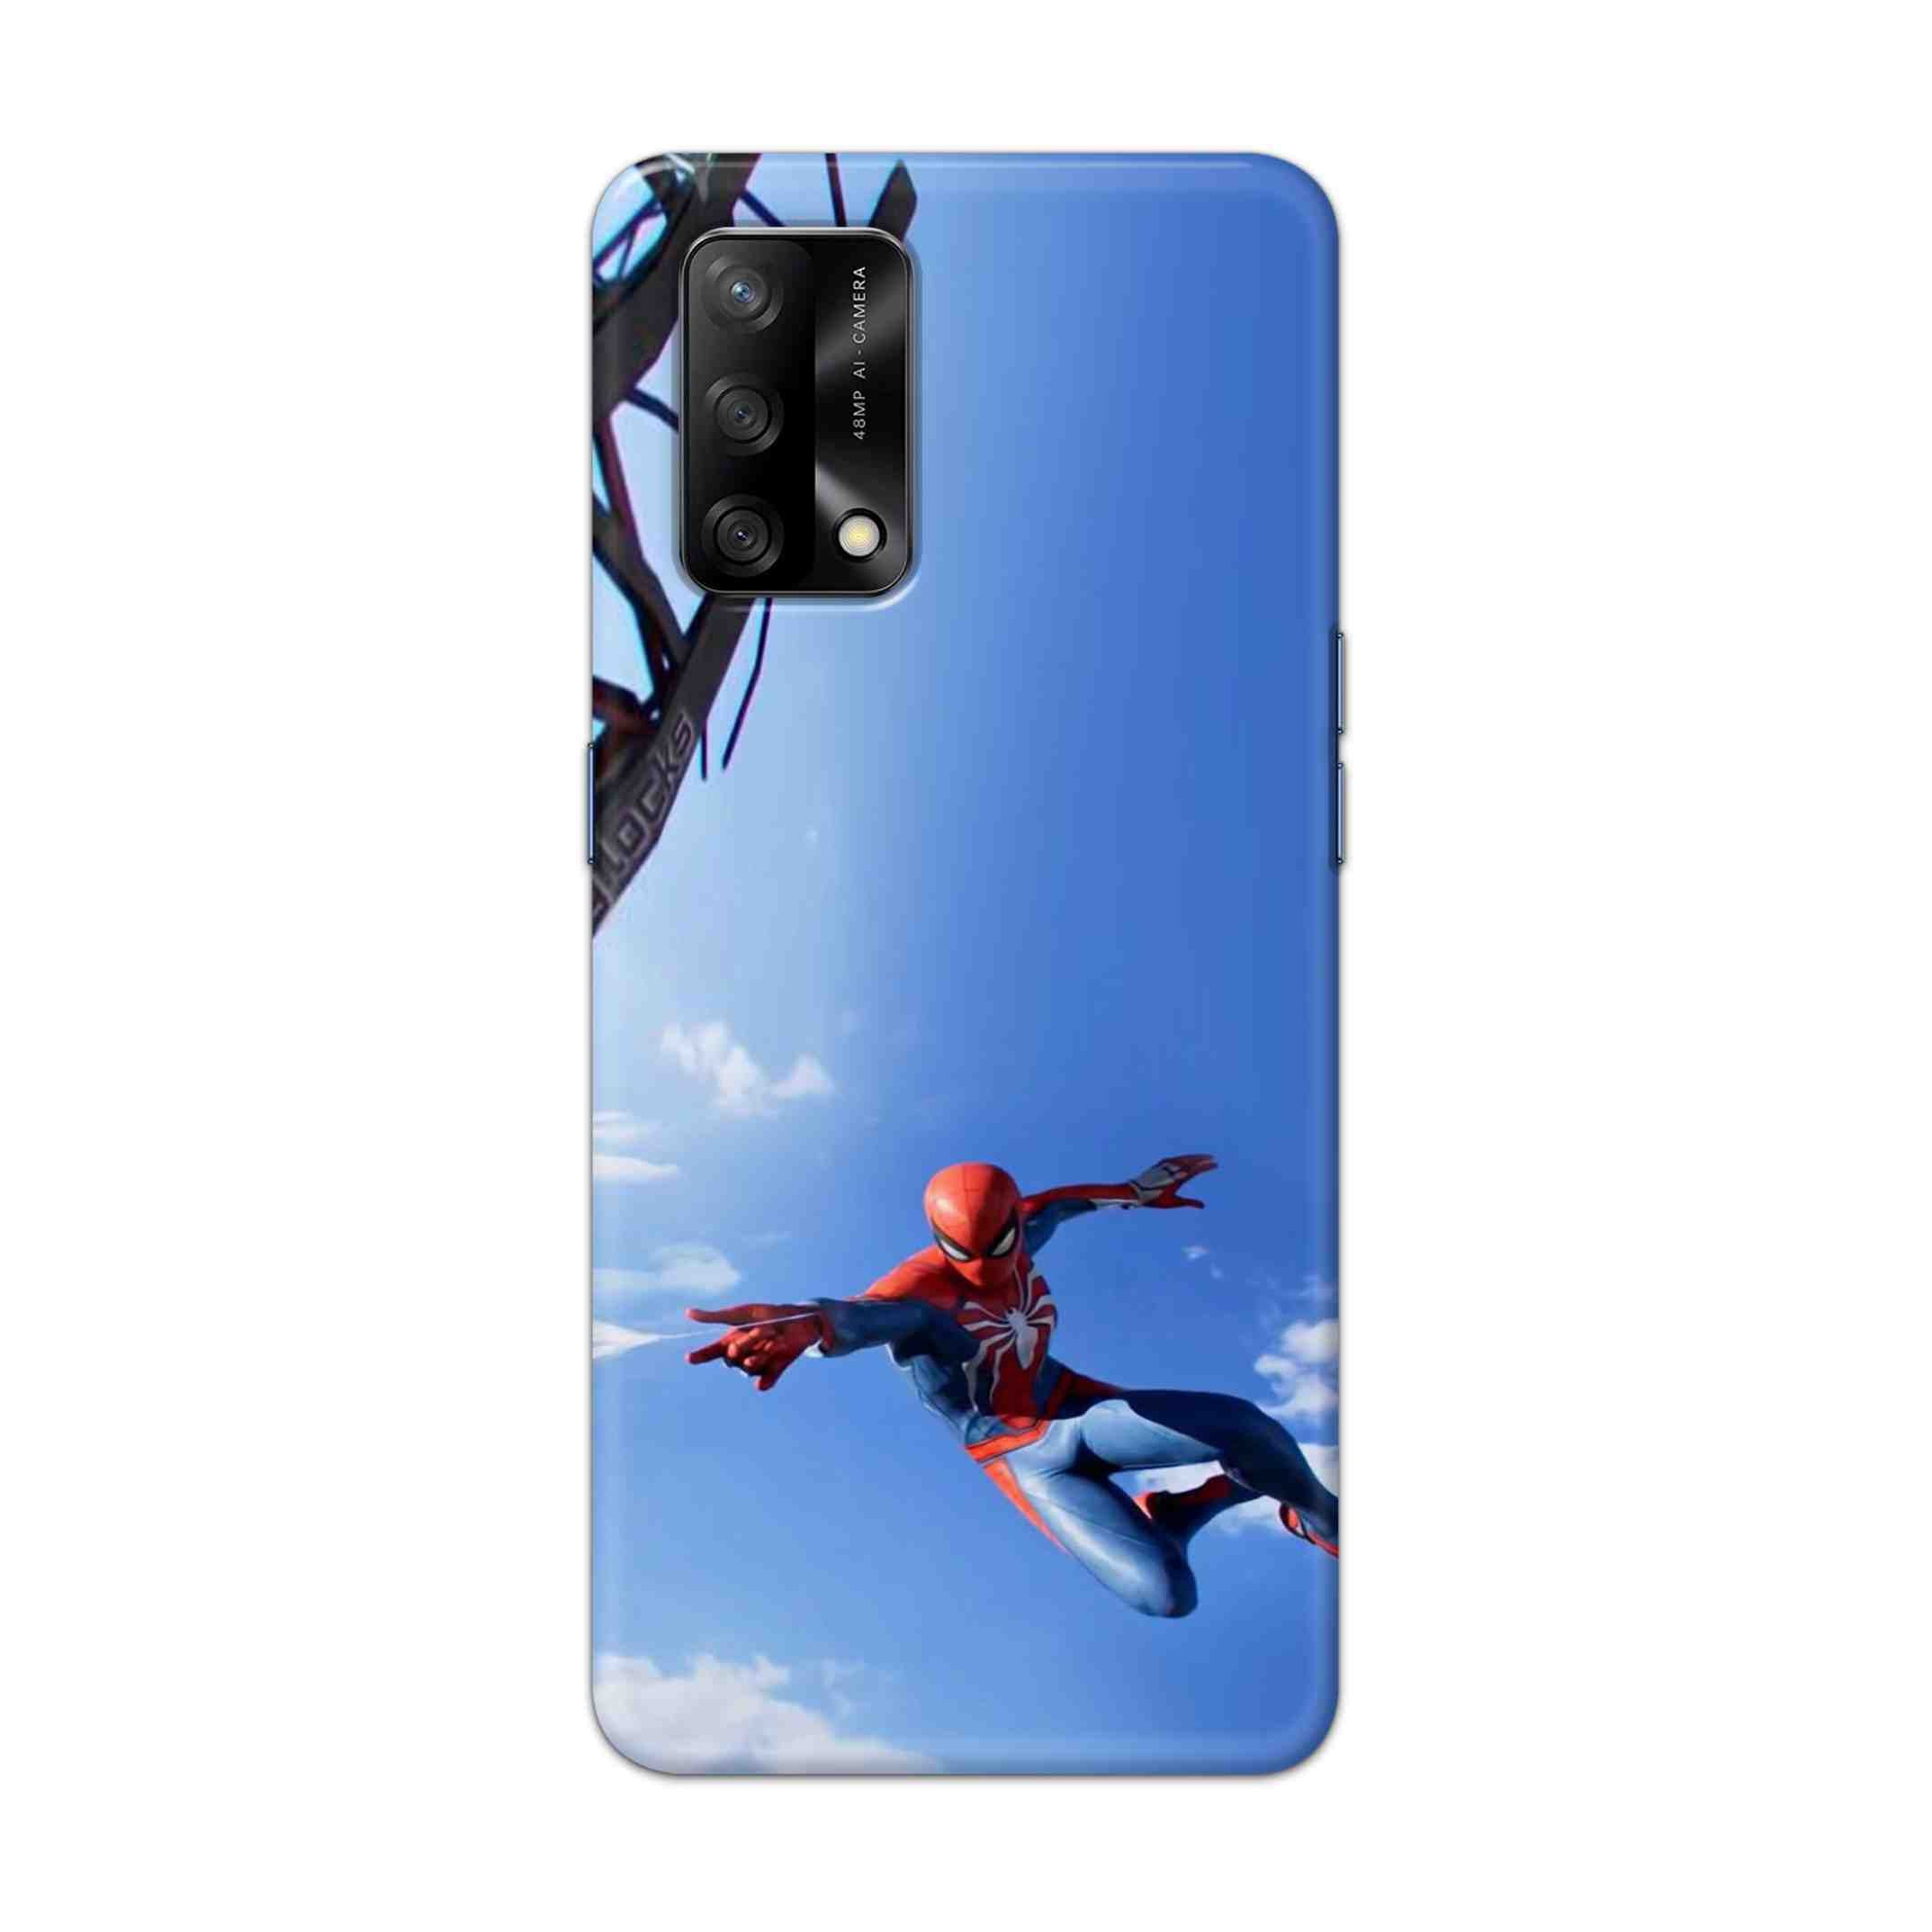 Buy Marvel Studio Spiderman Hard Back Mobile Phone Case Cover For Oppo F19 Online